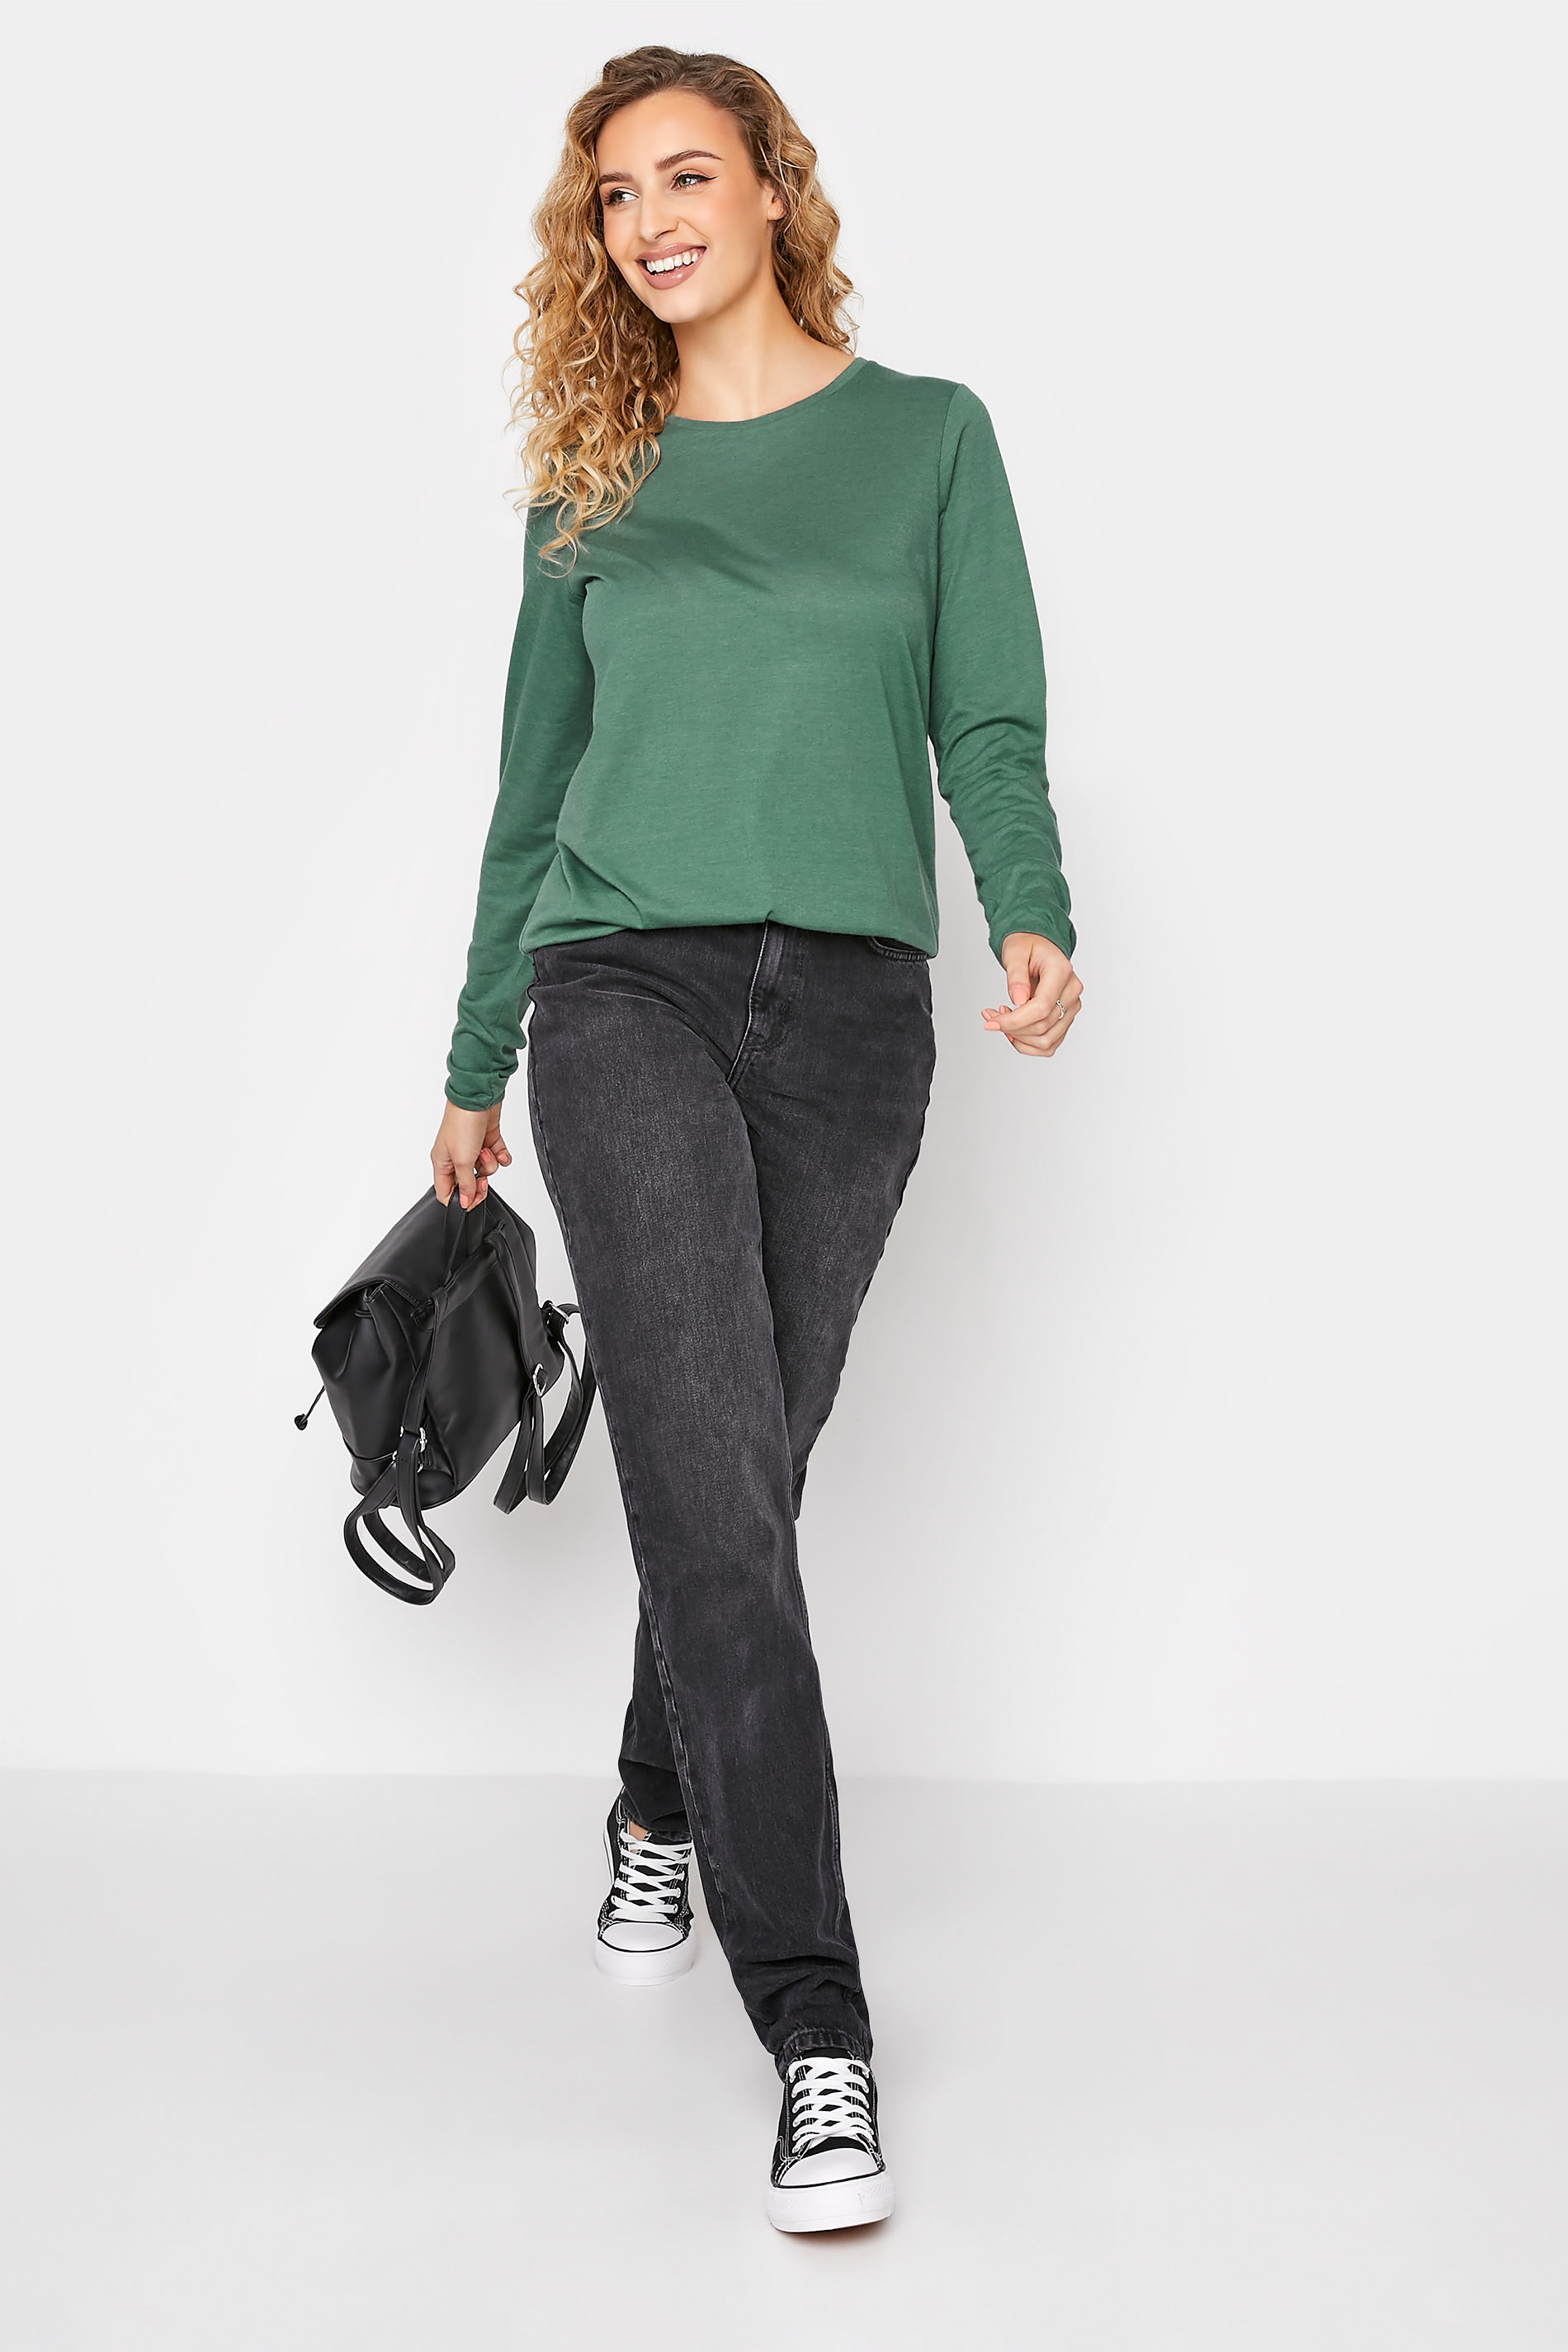 LTS Tall Women's Sage Green Long Sleeve T-Shirt | Long Tall Sally 3